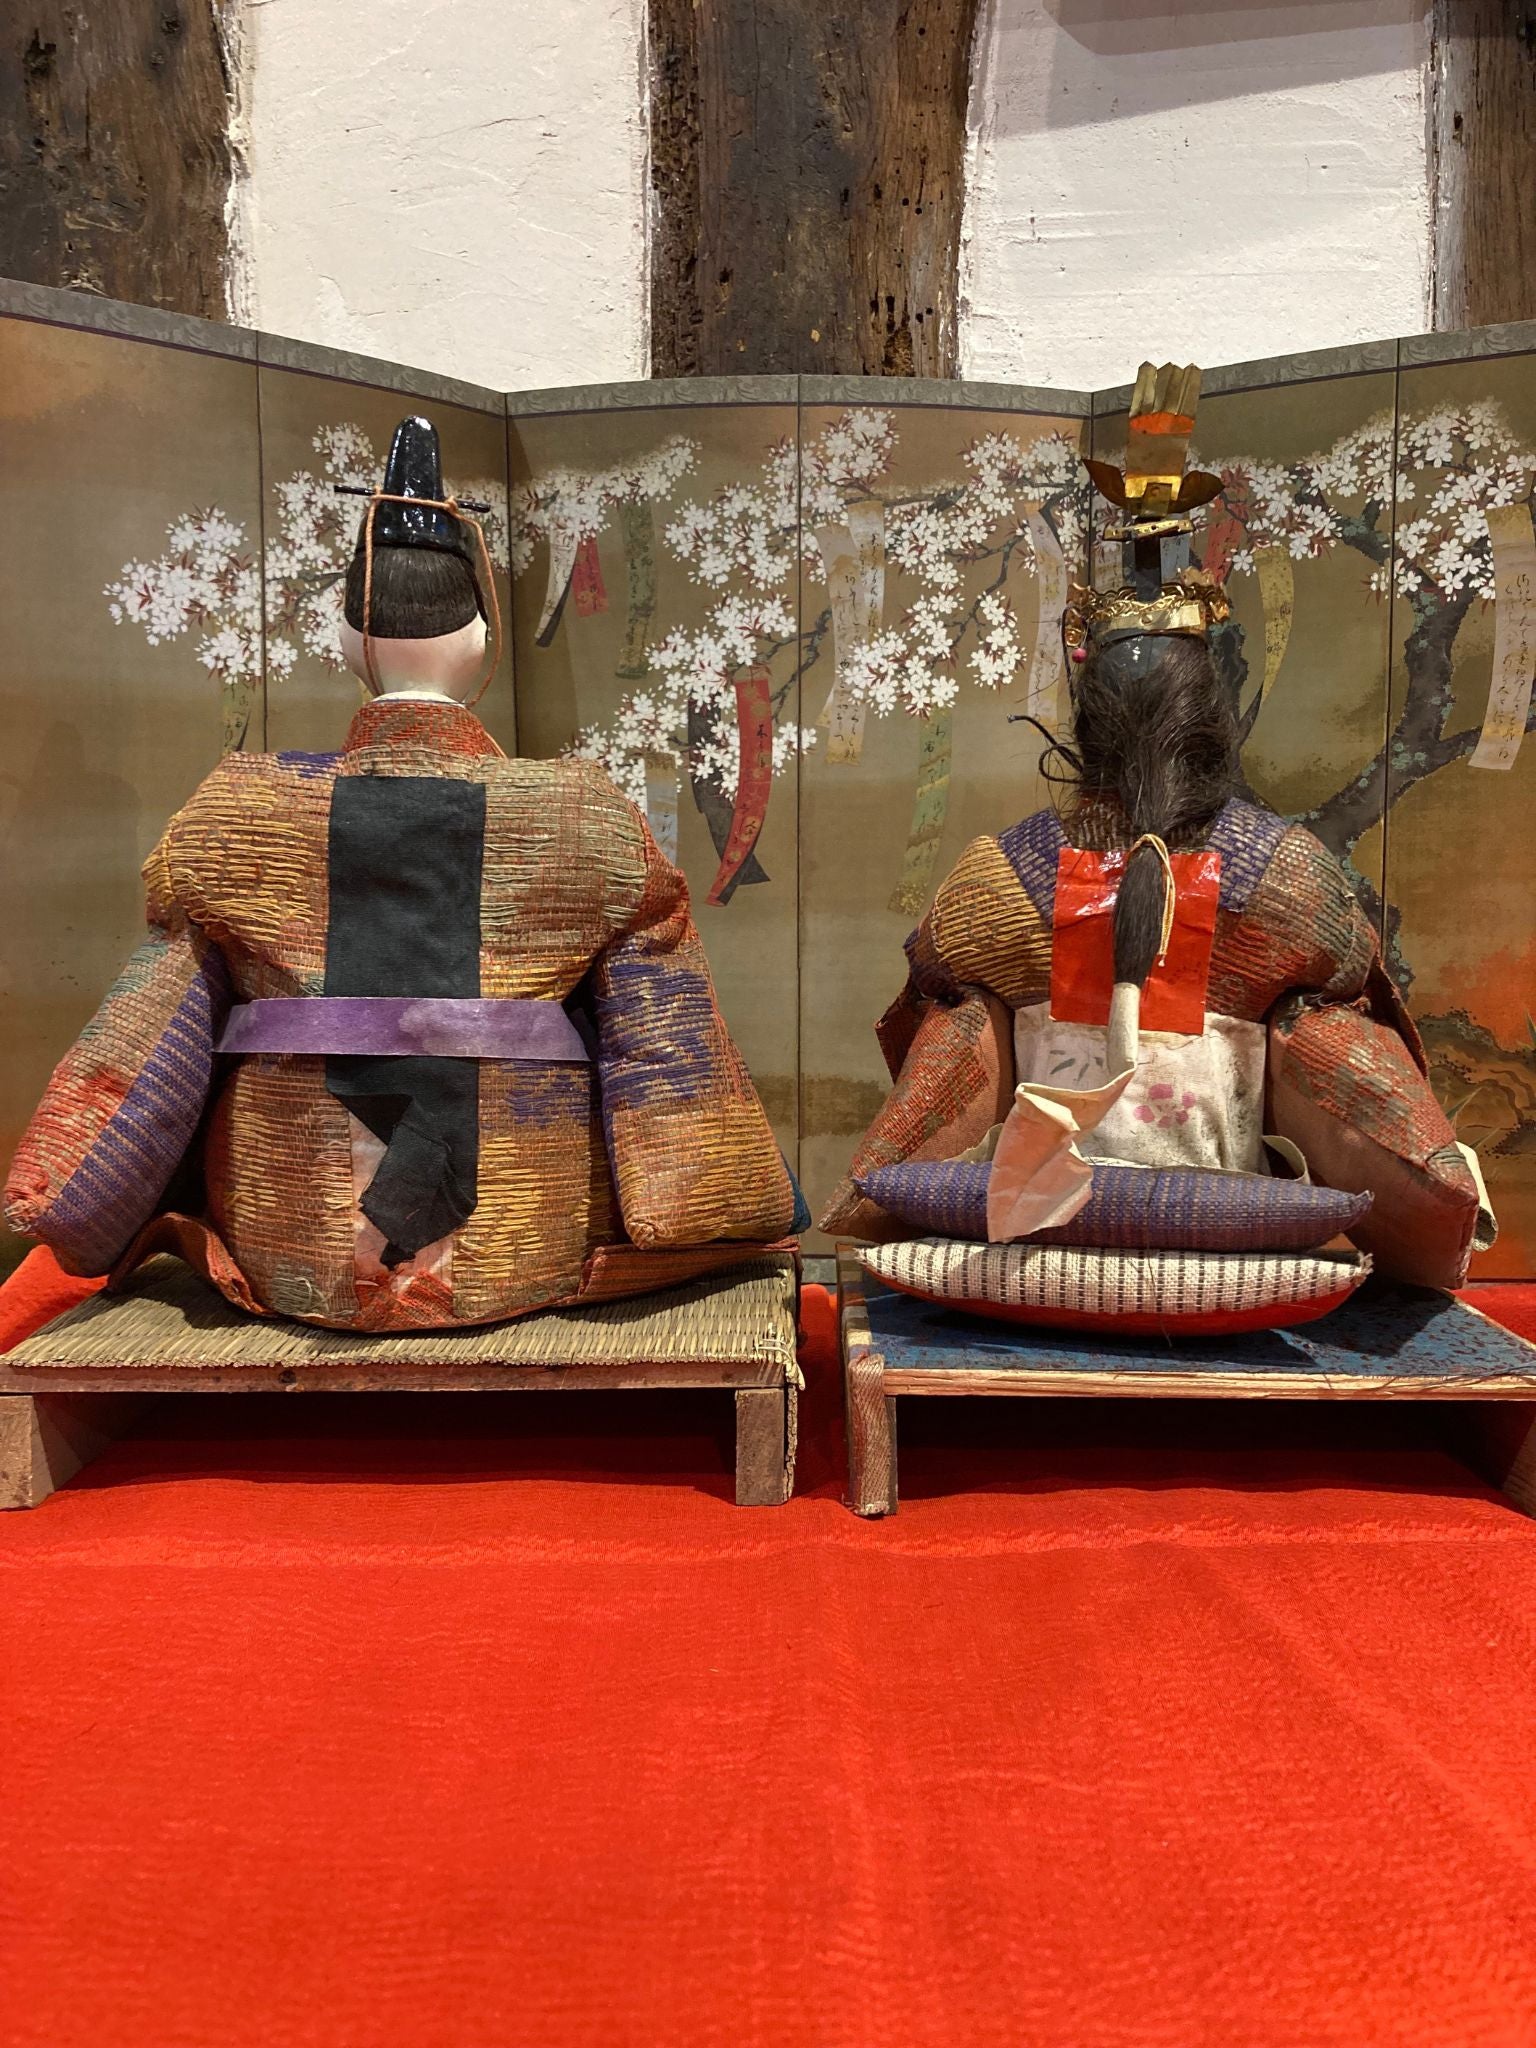 poupées japonaises pour la fête de Hina Matsuri (la fête des filles), représentant l'Empereur et l'Impératrice  de dos